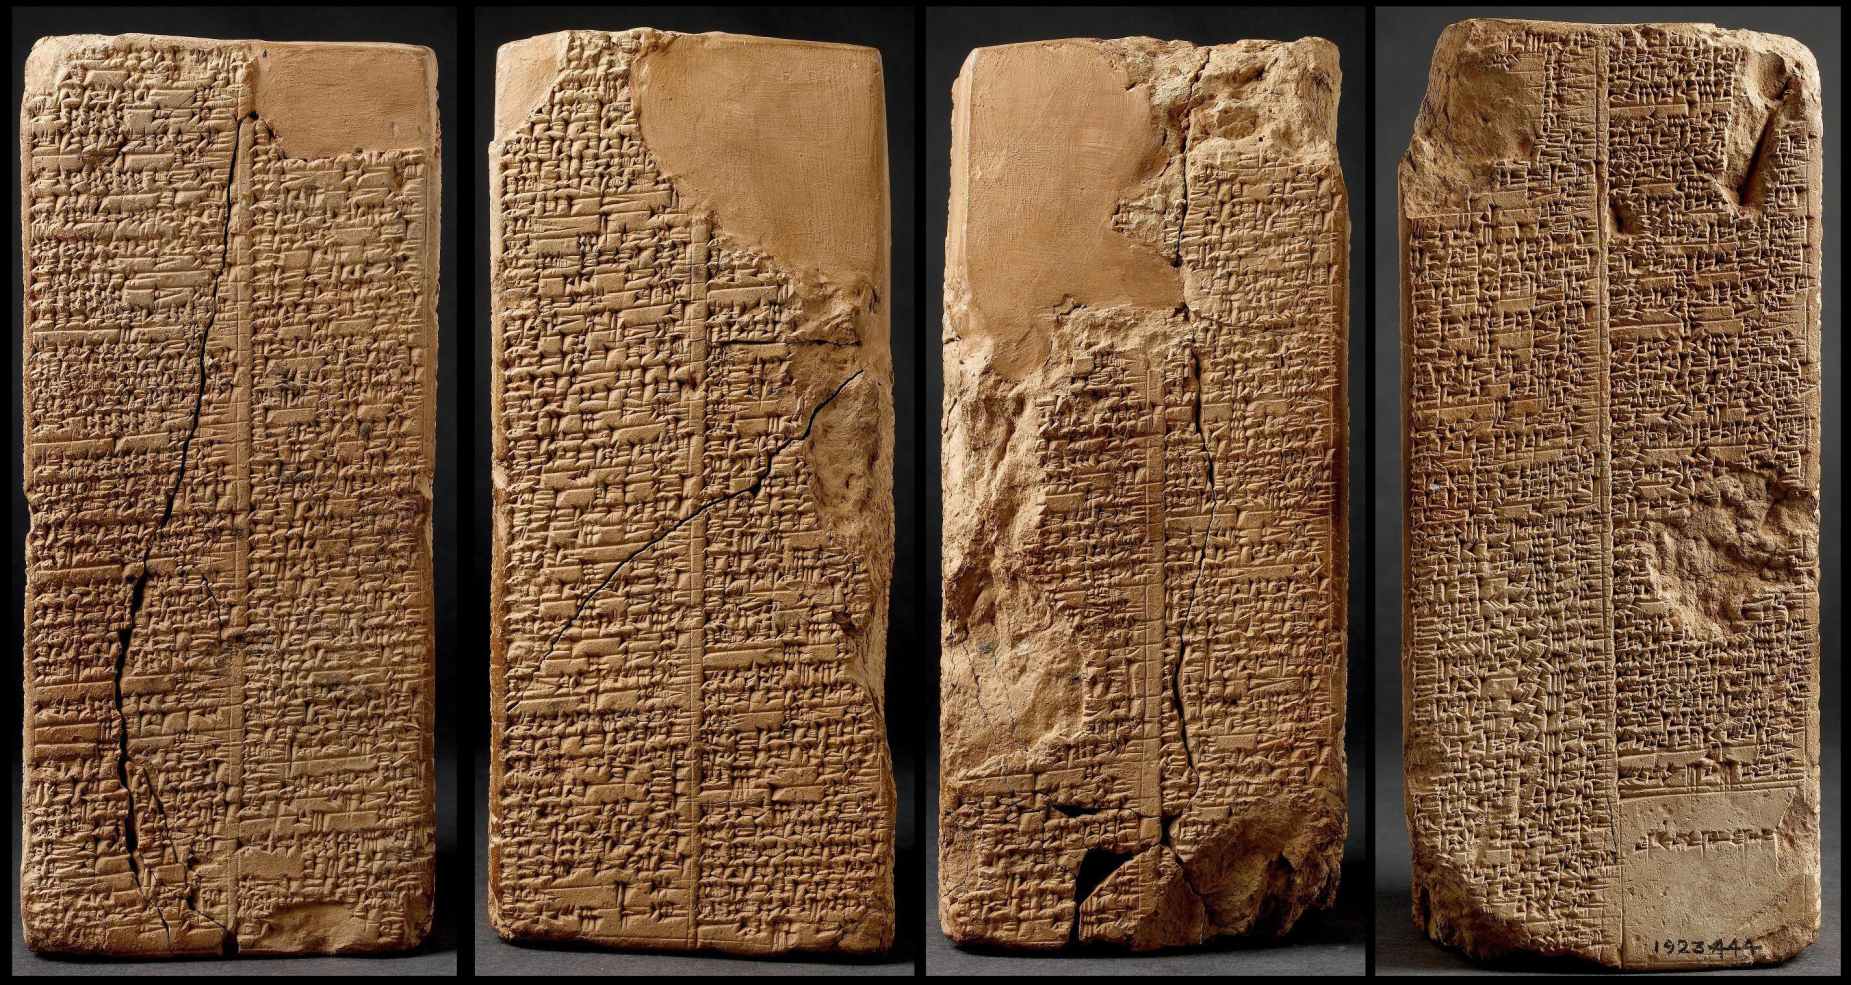 បញ្ជីស្តេច Sumerian ឯកសារអក្សរ Cuneiform រាយបញ្ជីទីក្រុង Sumerian ហើយពួកគេគ្រប់គ្រង។ © អាឡាមី | មានសុពលភាពចាប់ពីថ្ងៃទី ១៥ ខែសីហា ឆ្នាំ ២០២២